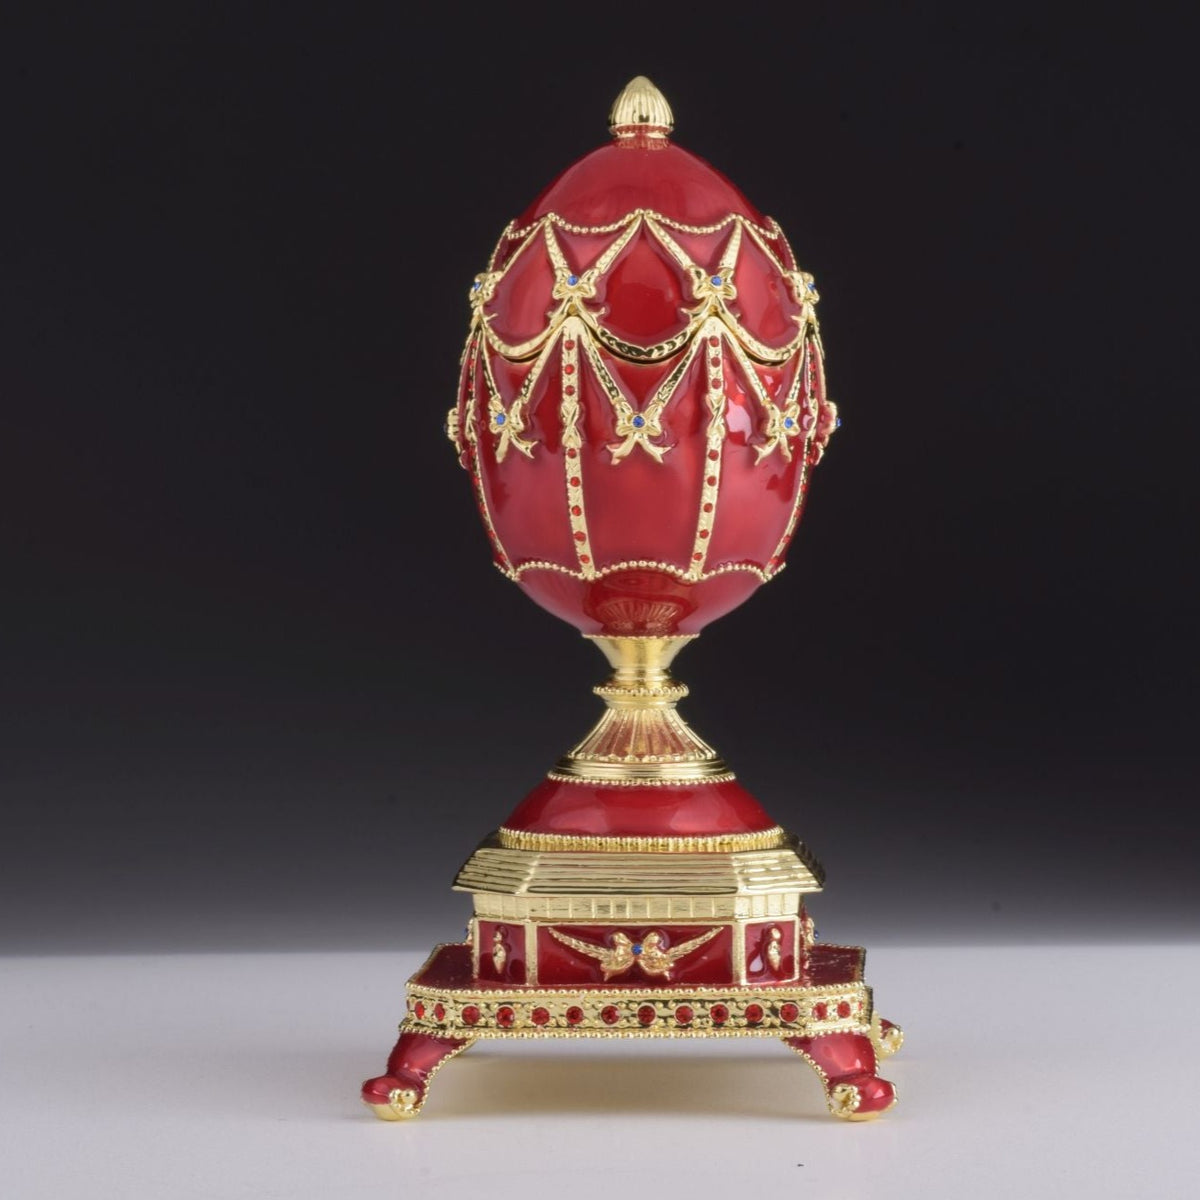 Œuf de Fabergé rouge avec horloge à l'intérieur